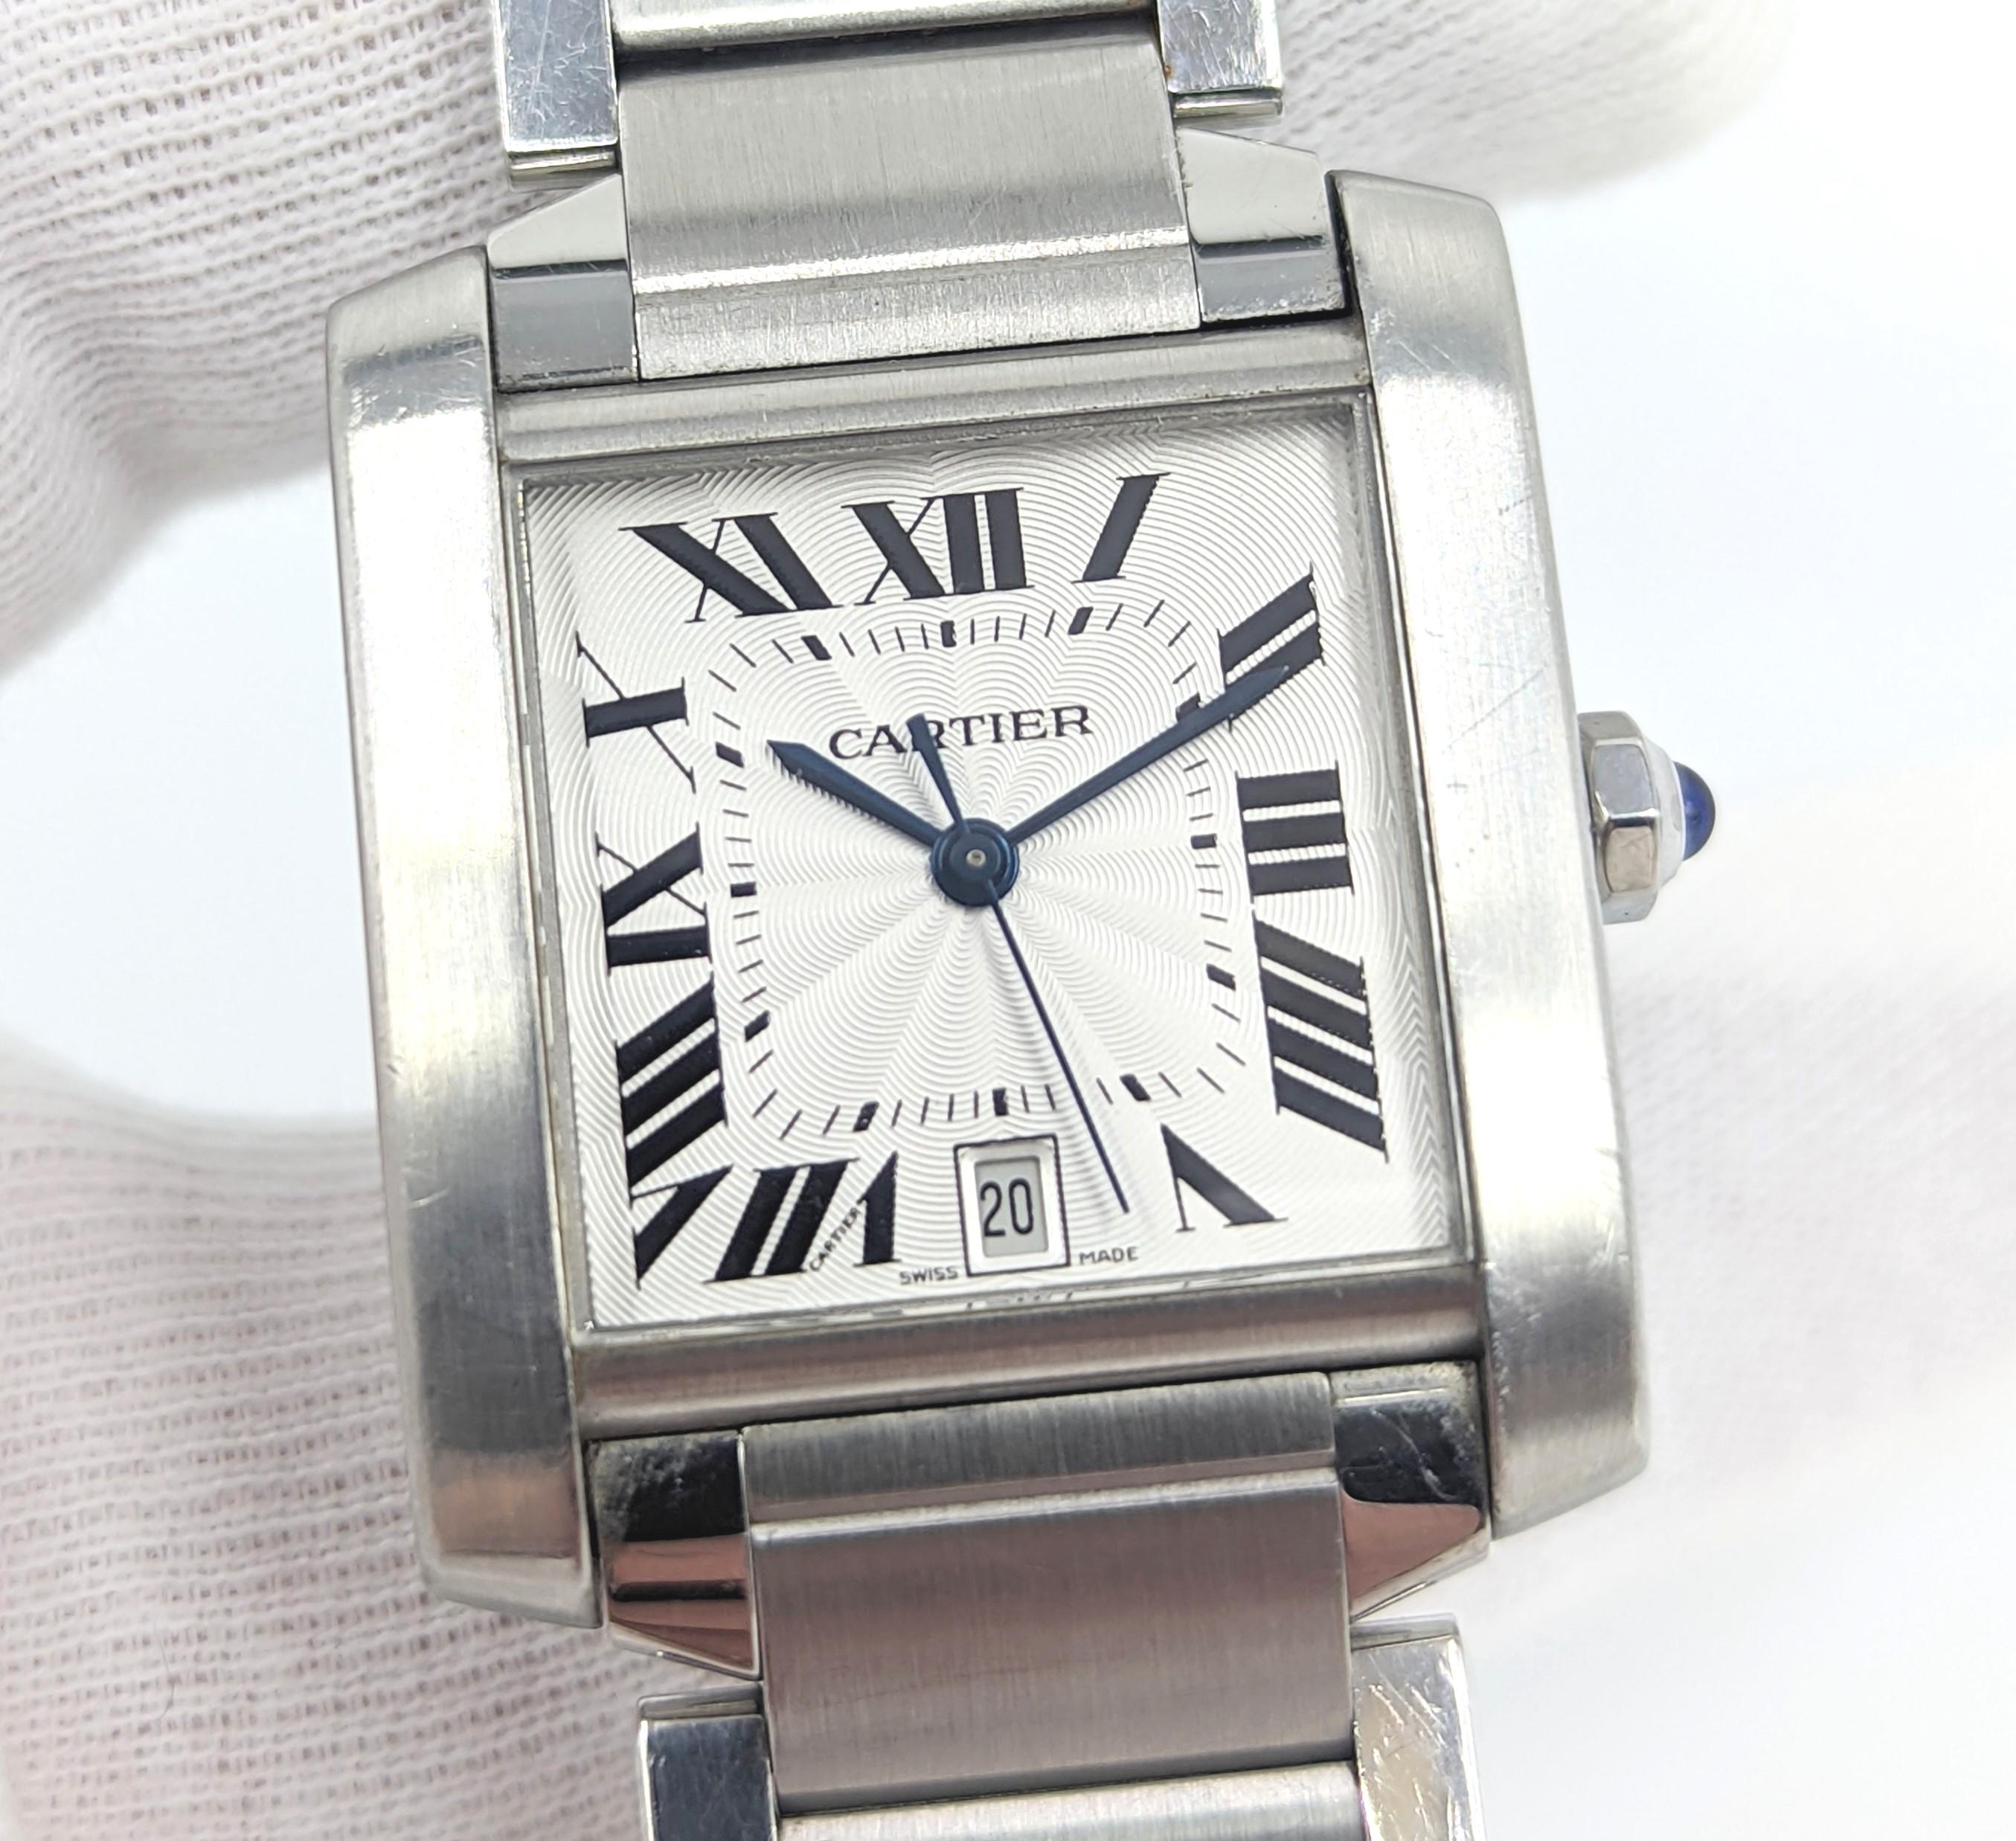 Eine Cartier Tank Francaise Armbanduhr mittlerer Größe (32 mm) aus Edelstahl (Ref.2302). Das in der Schweiz hergestellte Uhrwerk hat einen automatischen Aufzug. Das Zifferblatt ist silbern mit schwarzen römischen Ziffern und einer Datumsanzeige bei